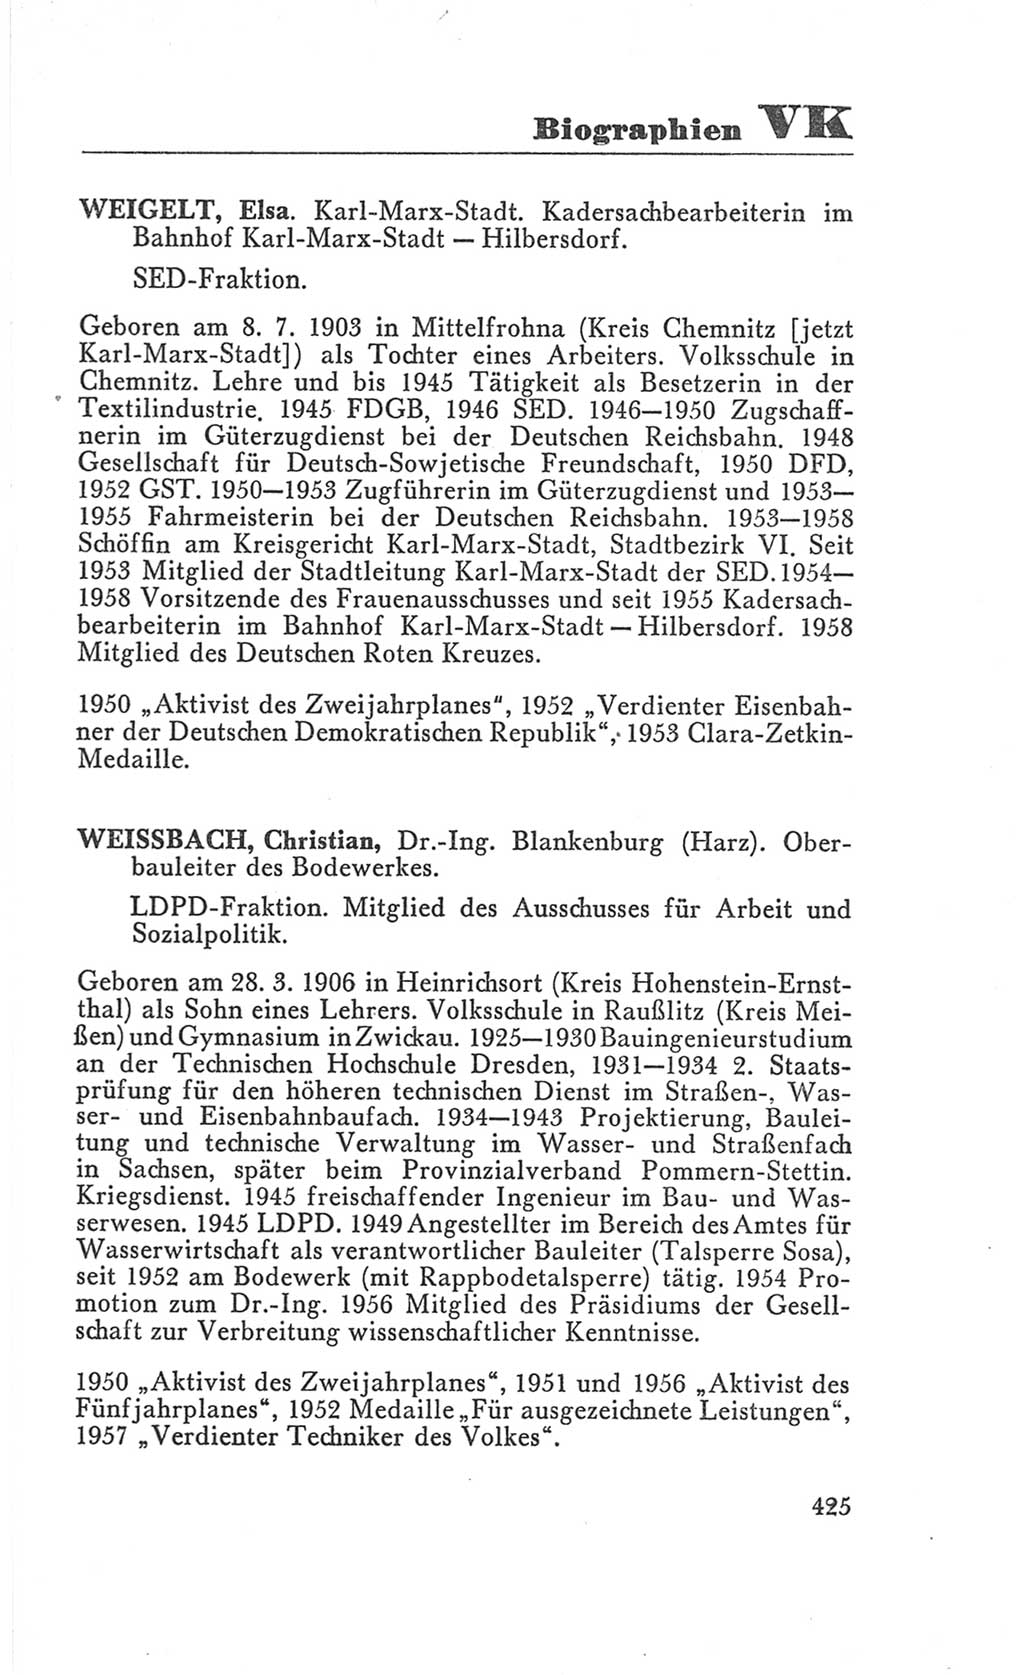 Handbuch der Volkskammer (VK) der Deutschen Demokratischen Republik (DDR), 3. Wahlperiode 1958-1963, Seite 425 (Hdb. VK. DDR 3. WP. 1958-1963, S. 425)